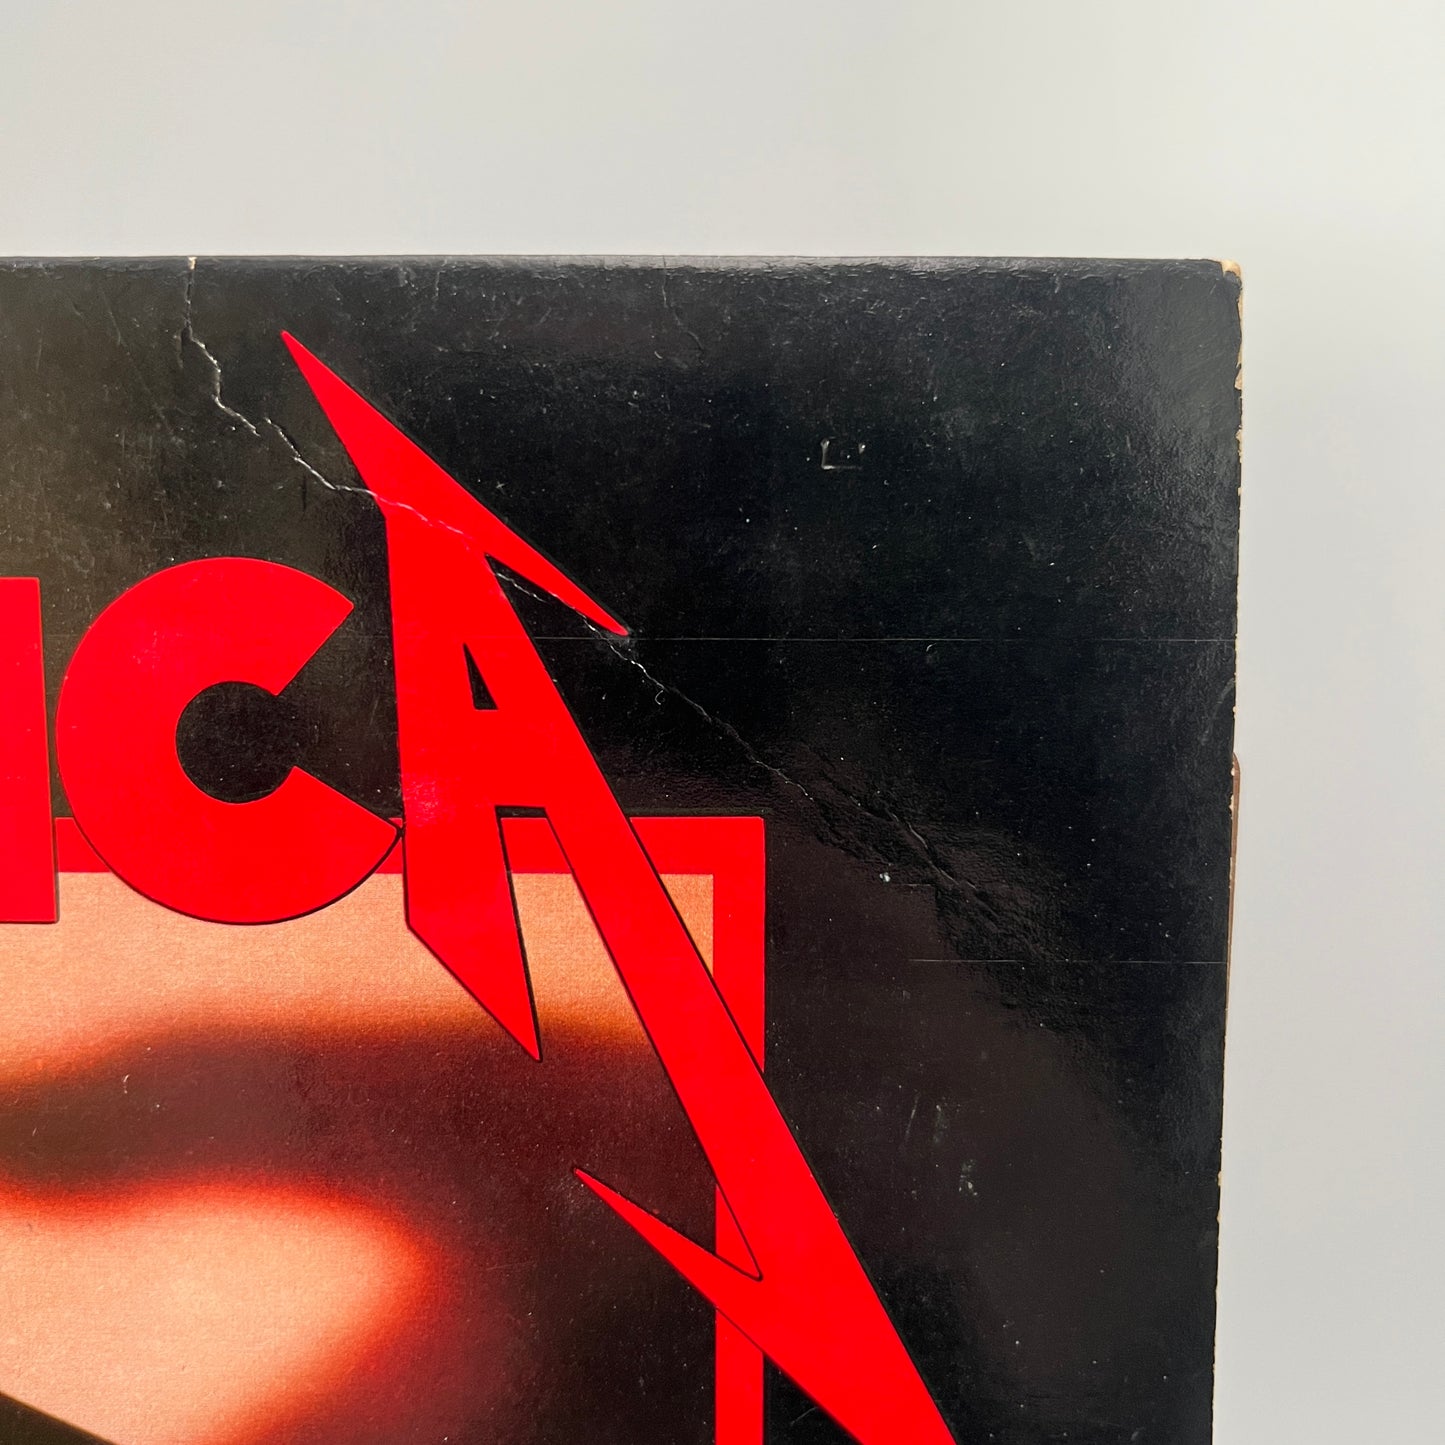 Metallica - Kill 'Em All Vinyl LP Original 1st Press Megaforce.